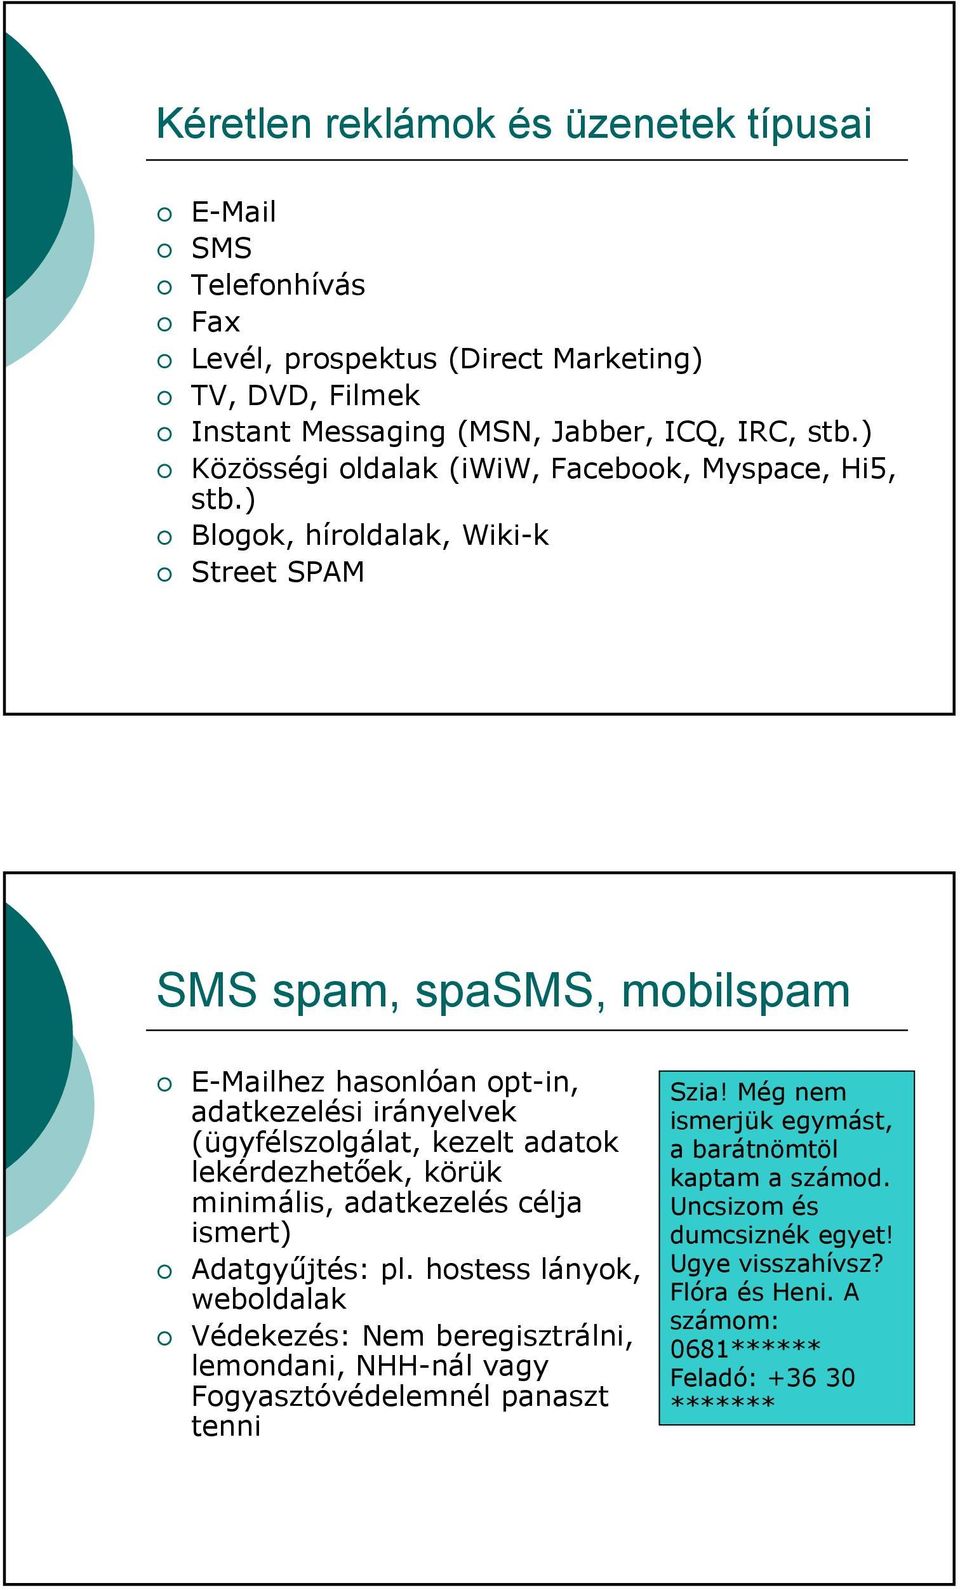 ) Blogok, híroldalak, Wiki-k Street SPAM SMS spam, spasms, mobilspam E-Mailhez hasonlóan opt-in, adatkezelési irányelvek (ügyfélszolgálat, kezelt adatok lekérdezhetőek, körük